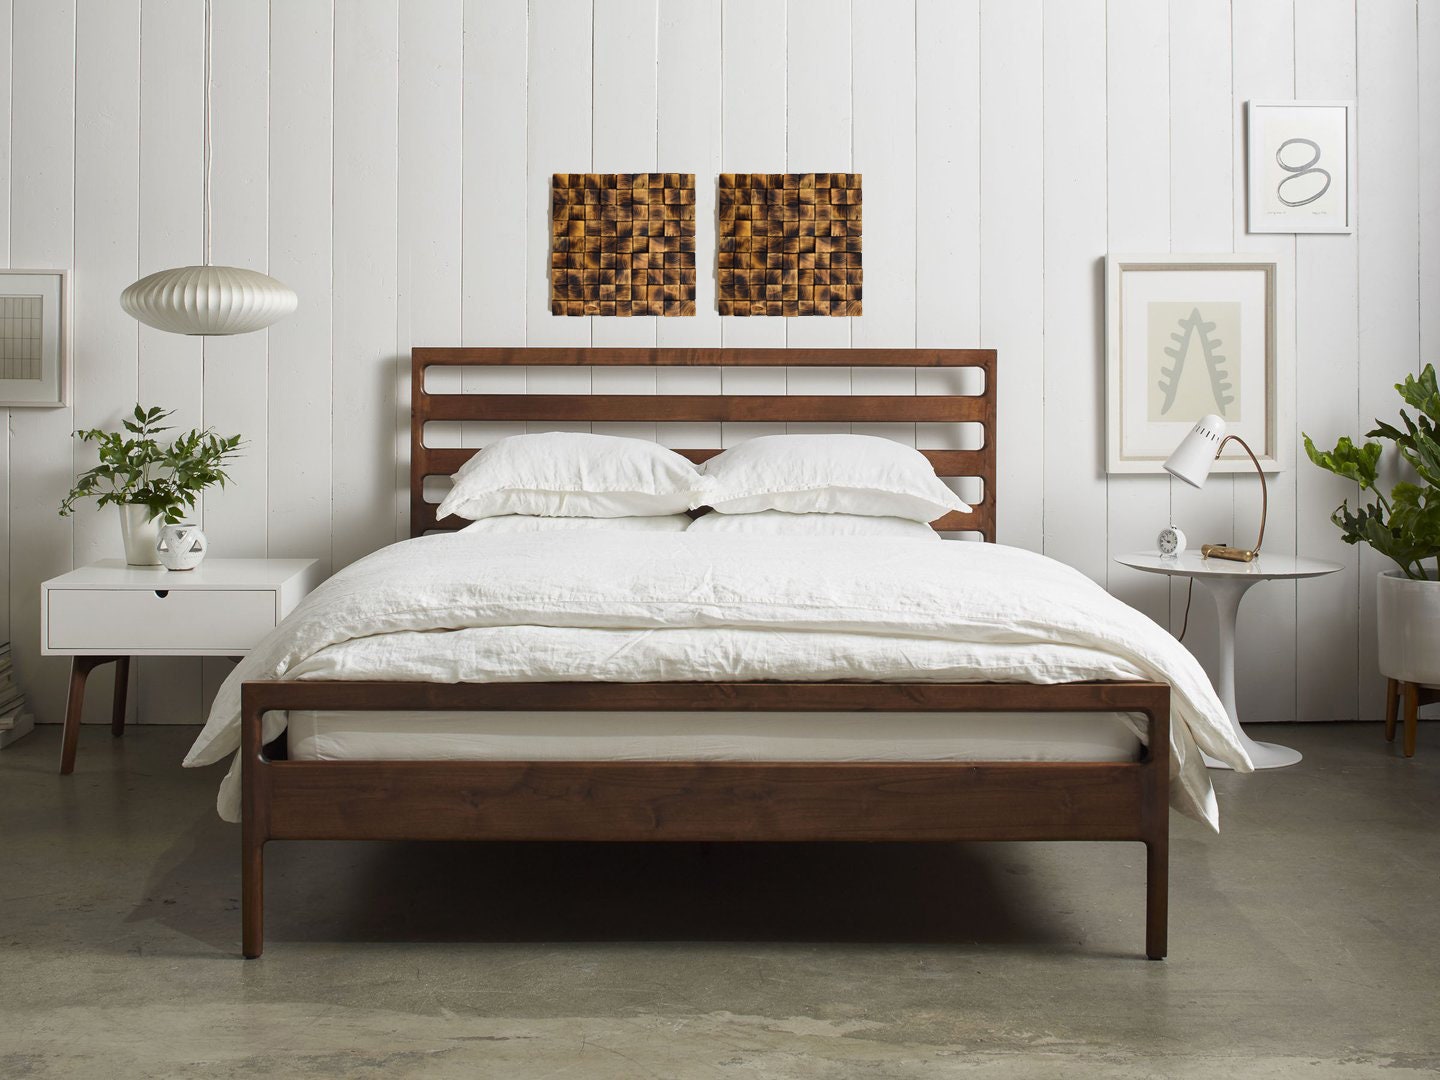 Скрип деревянных кроватей. Кровать деревянная. Деревянная кровать в интерьере. Кровать дерево. Кровать массив дерева.